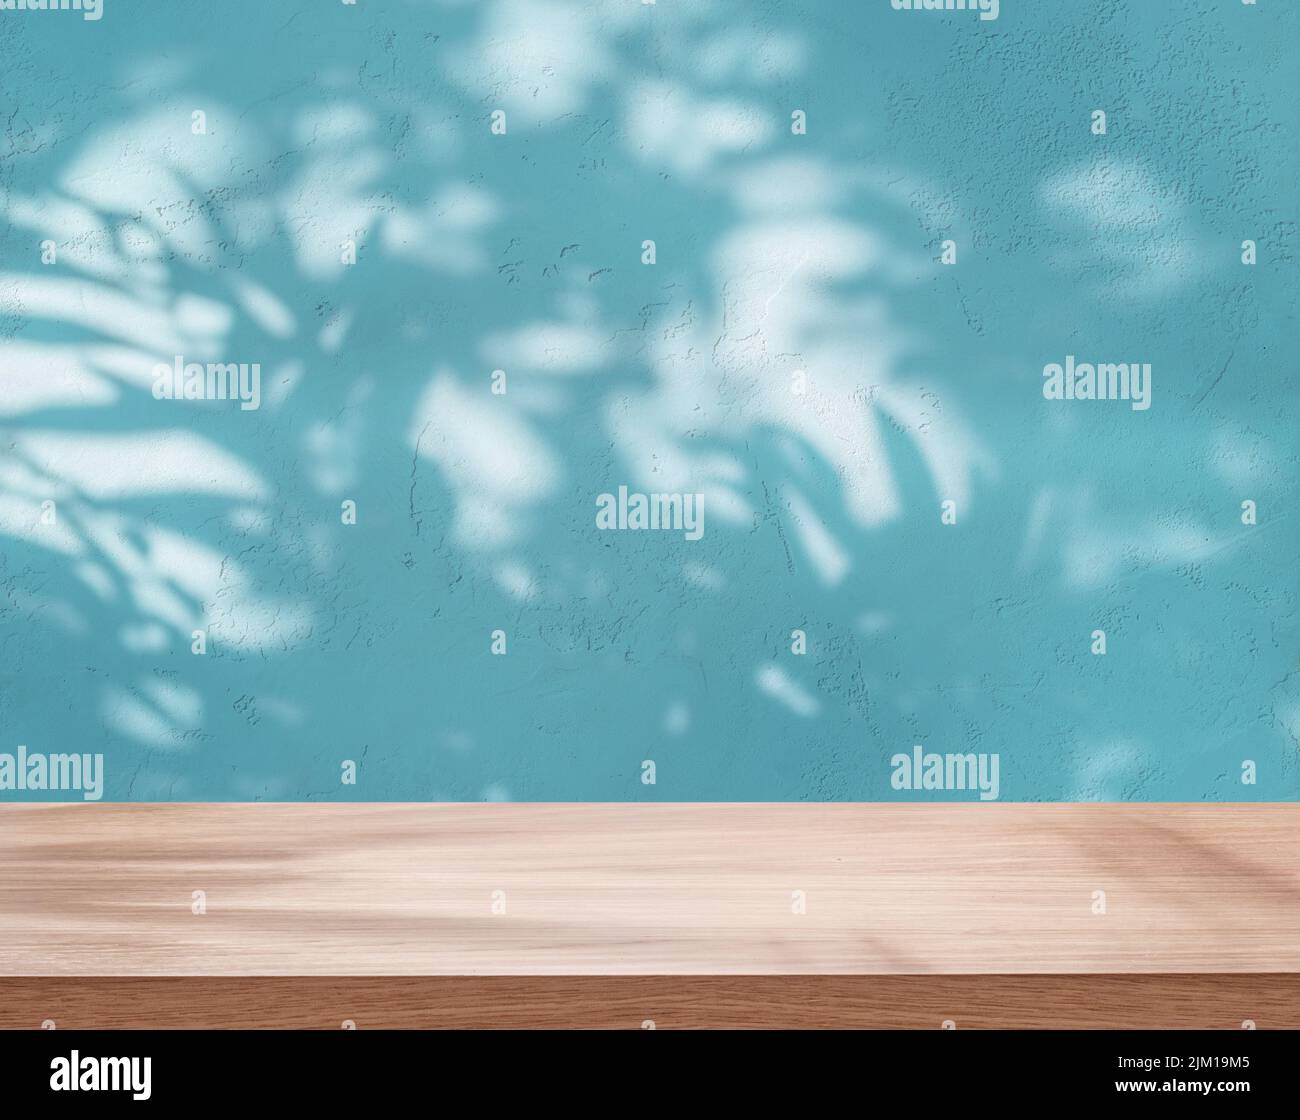 Tablero o tablero vacío y pared de estuco azul con sombras de hojas. Lugar para la exposición del producto. Foto de stock